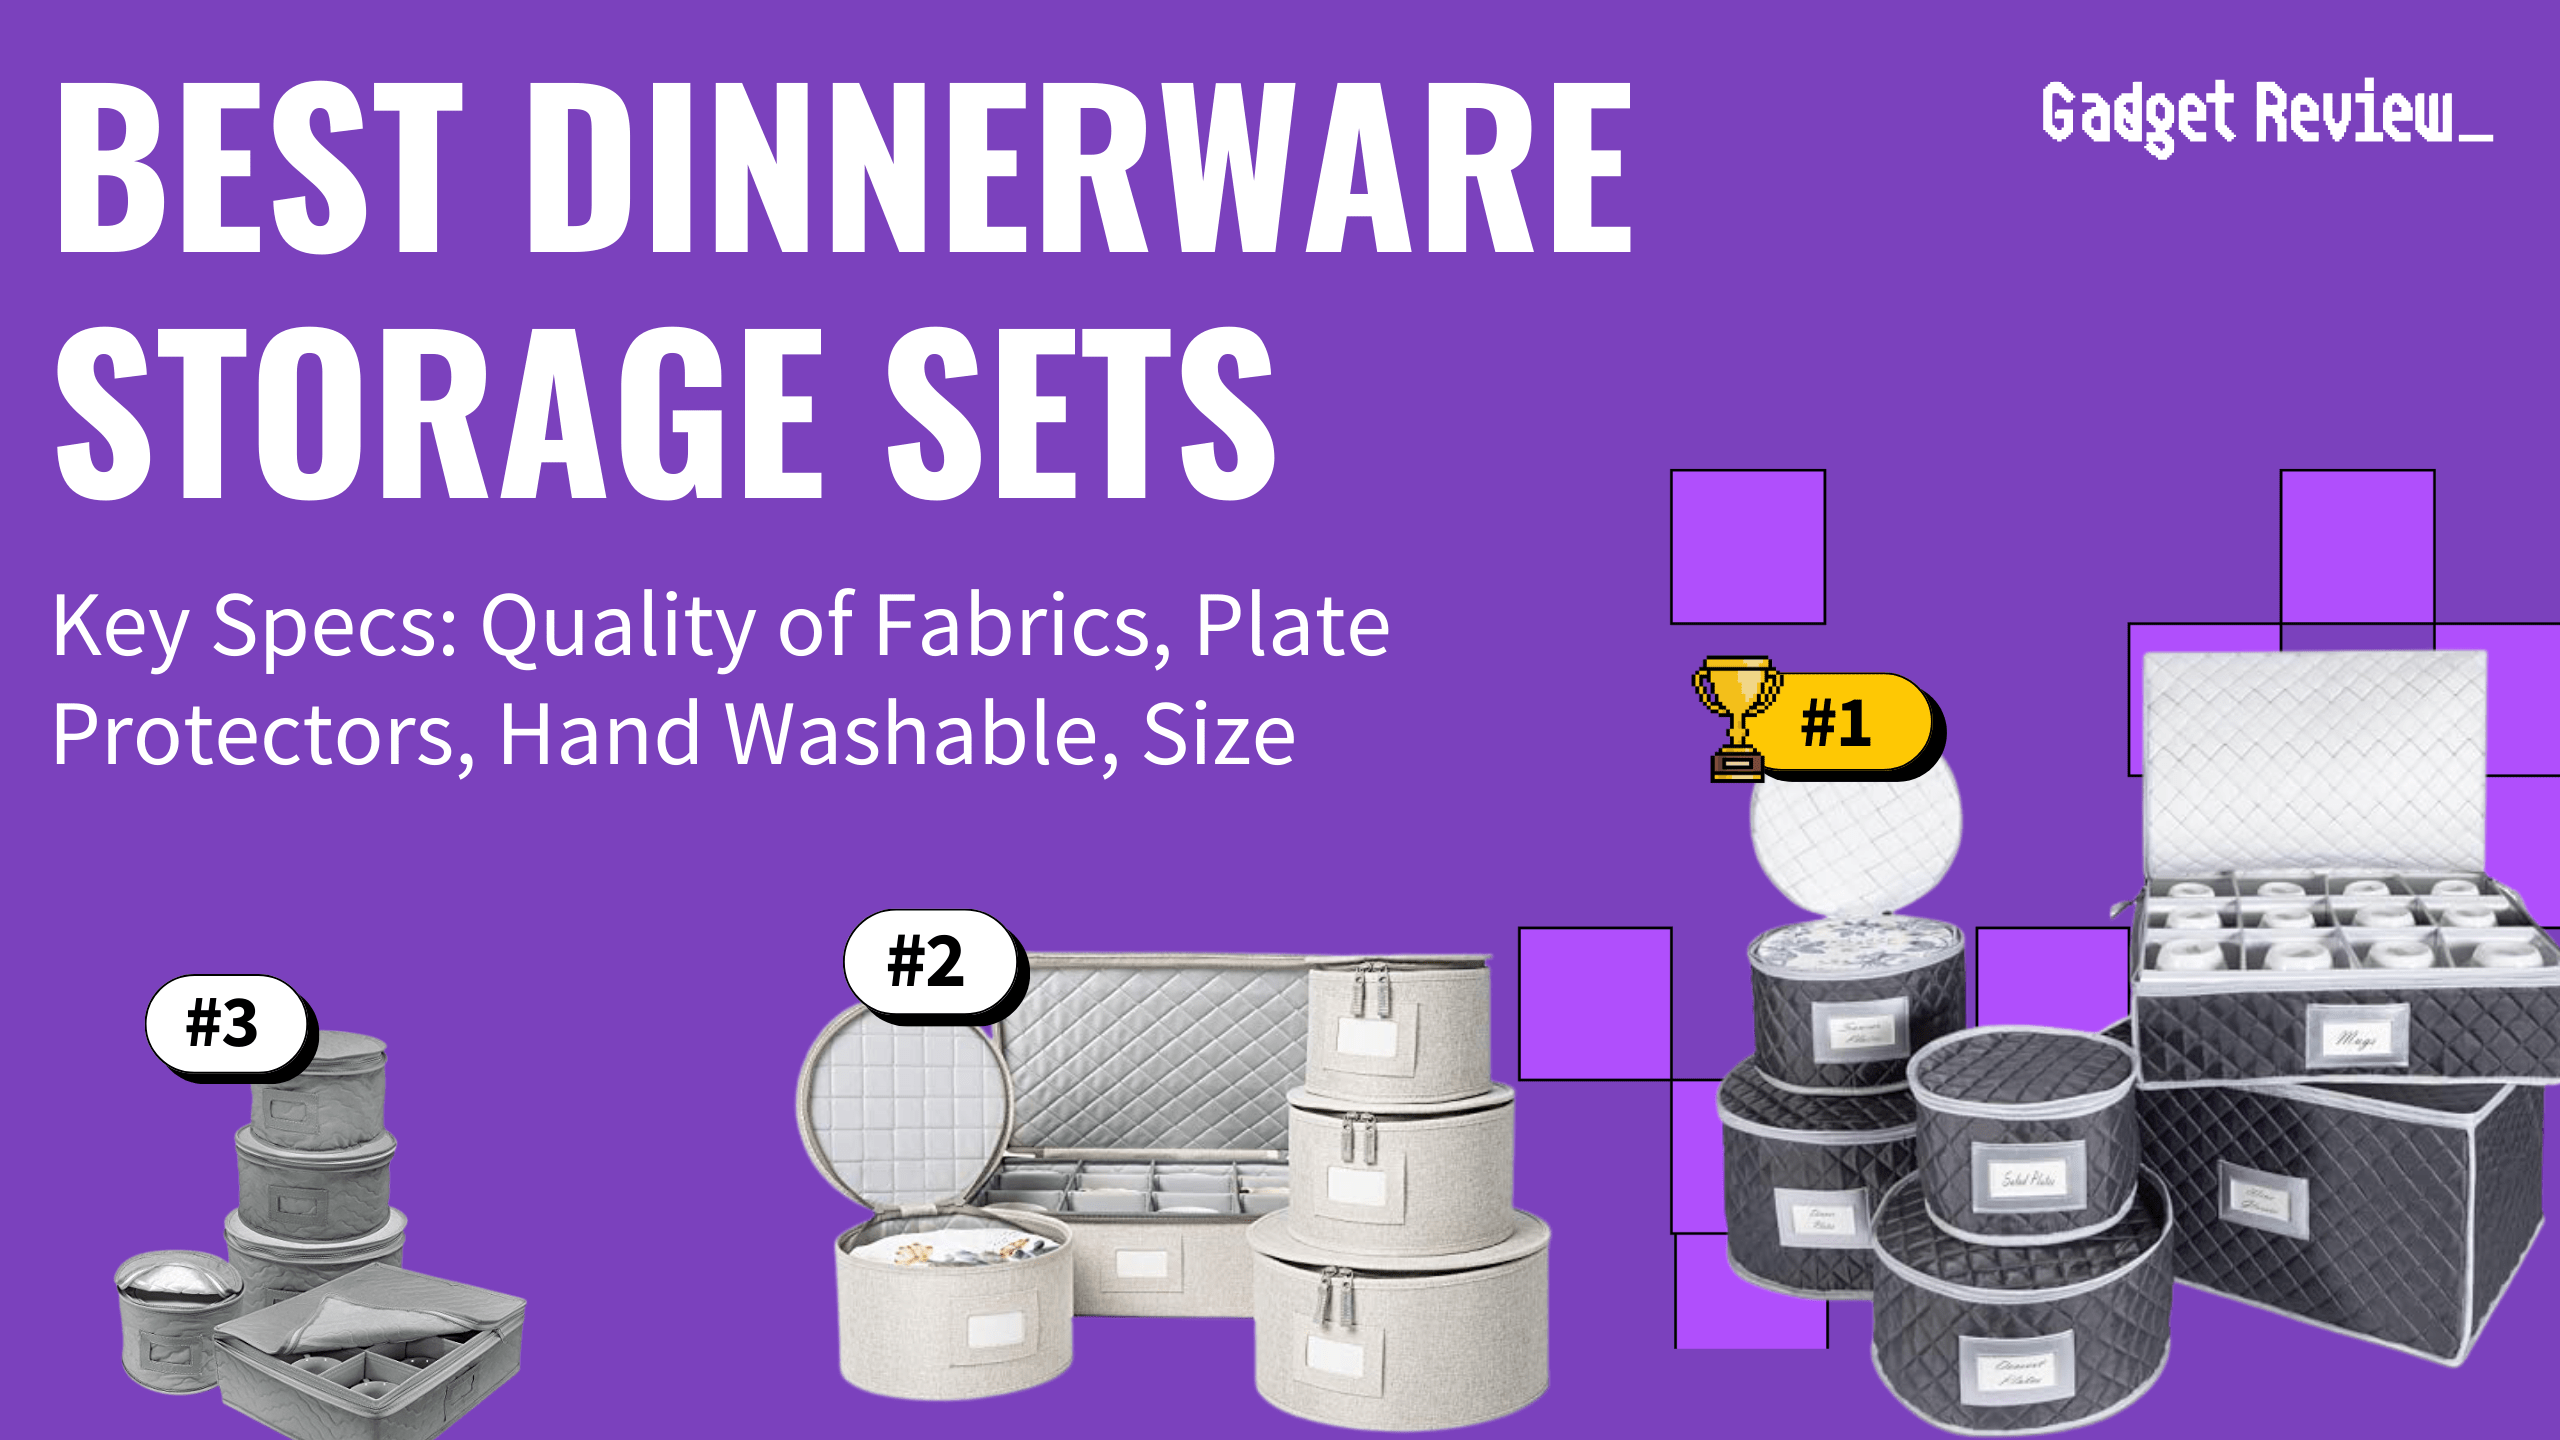 Best Dinnerware Storage Sets